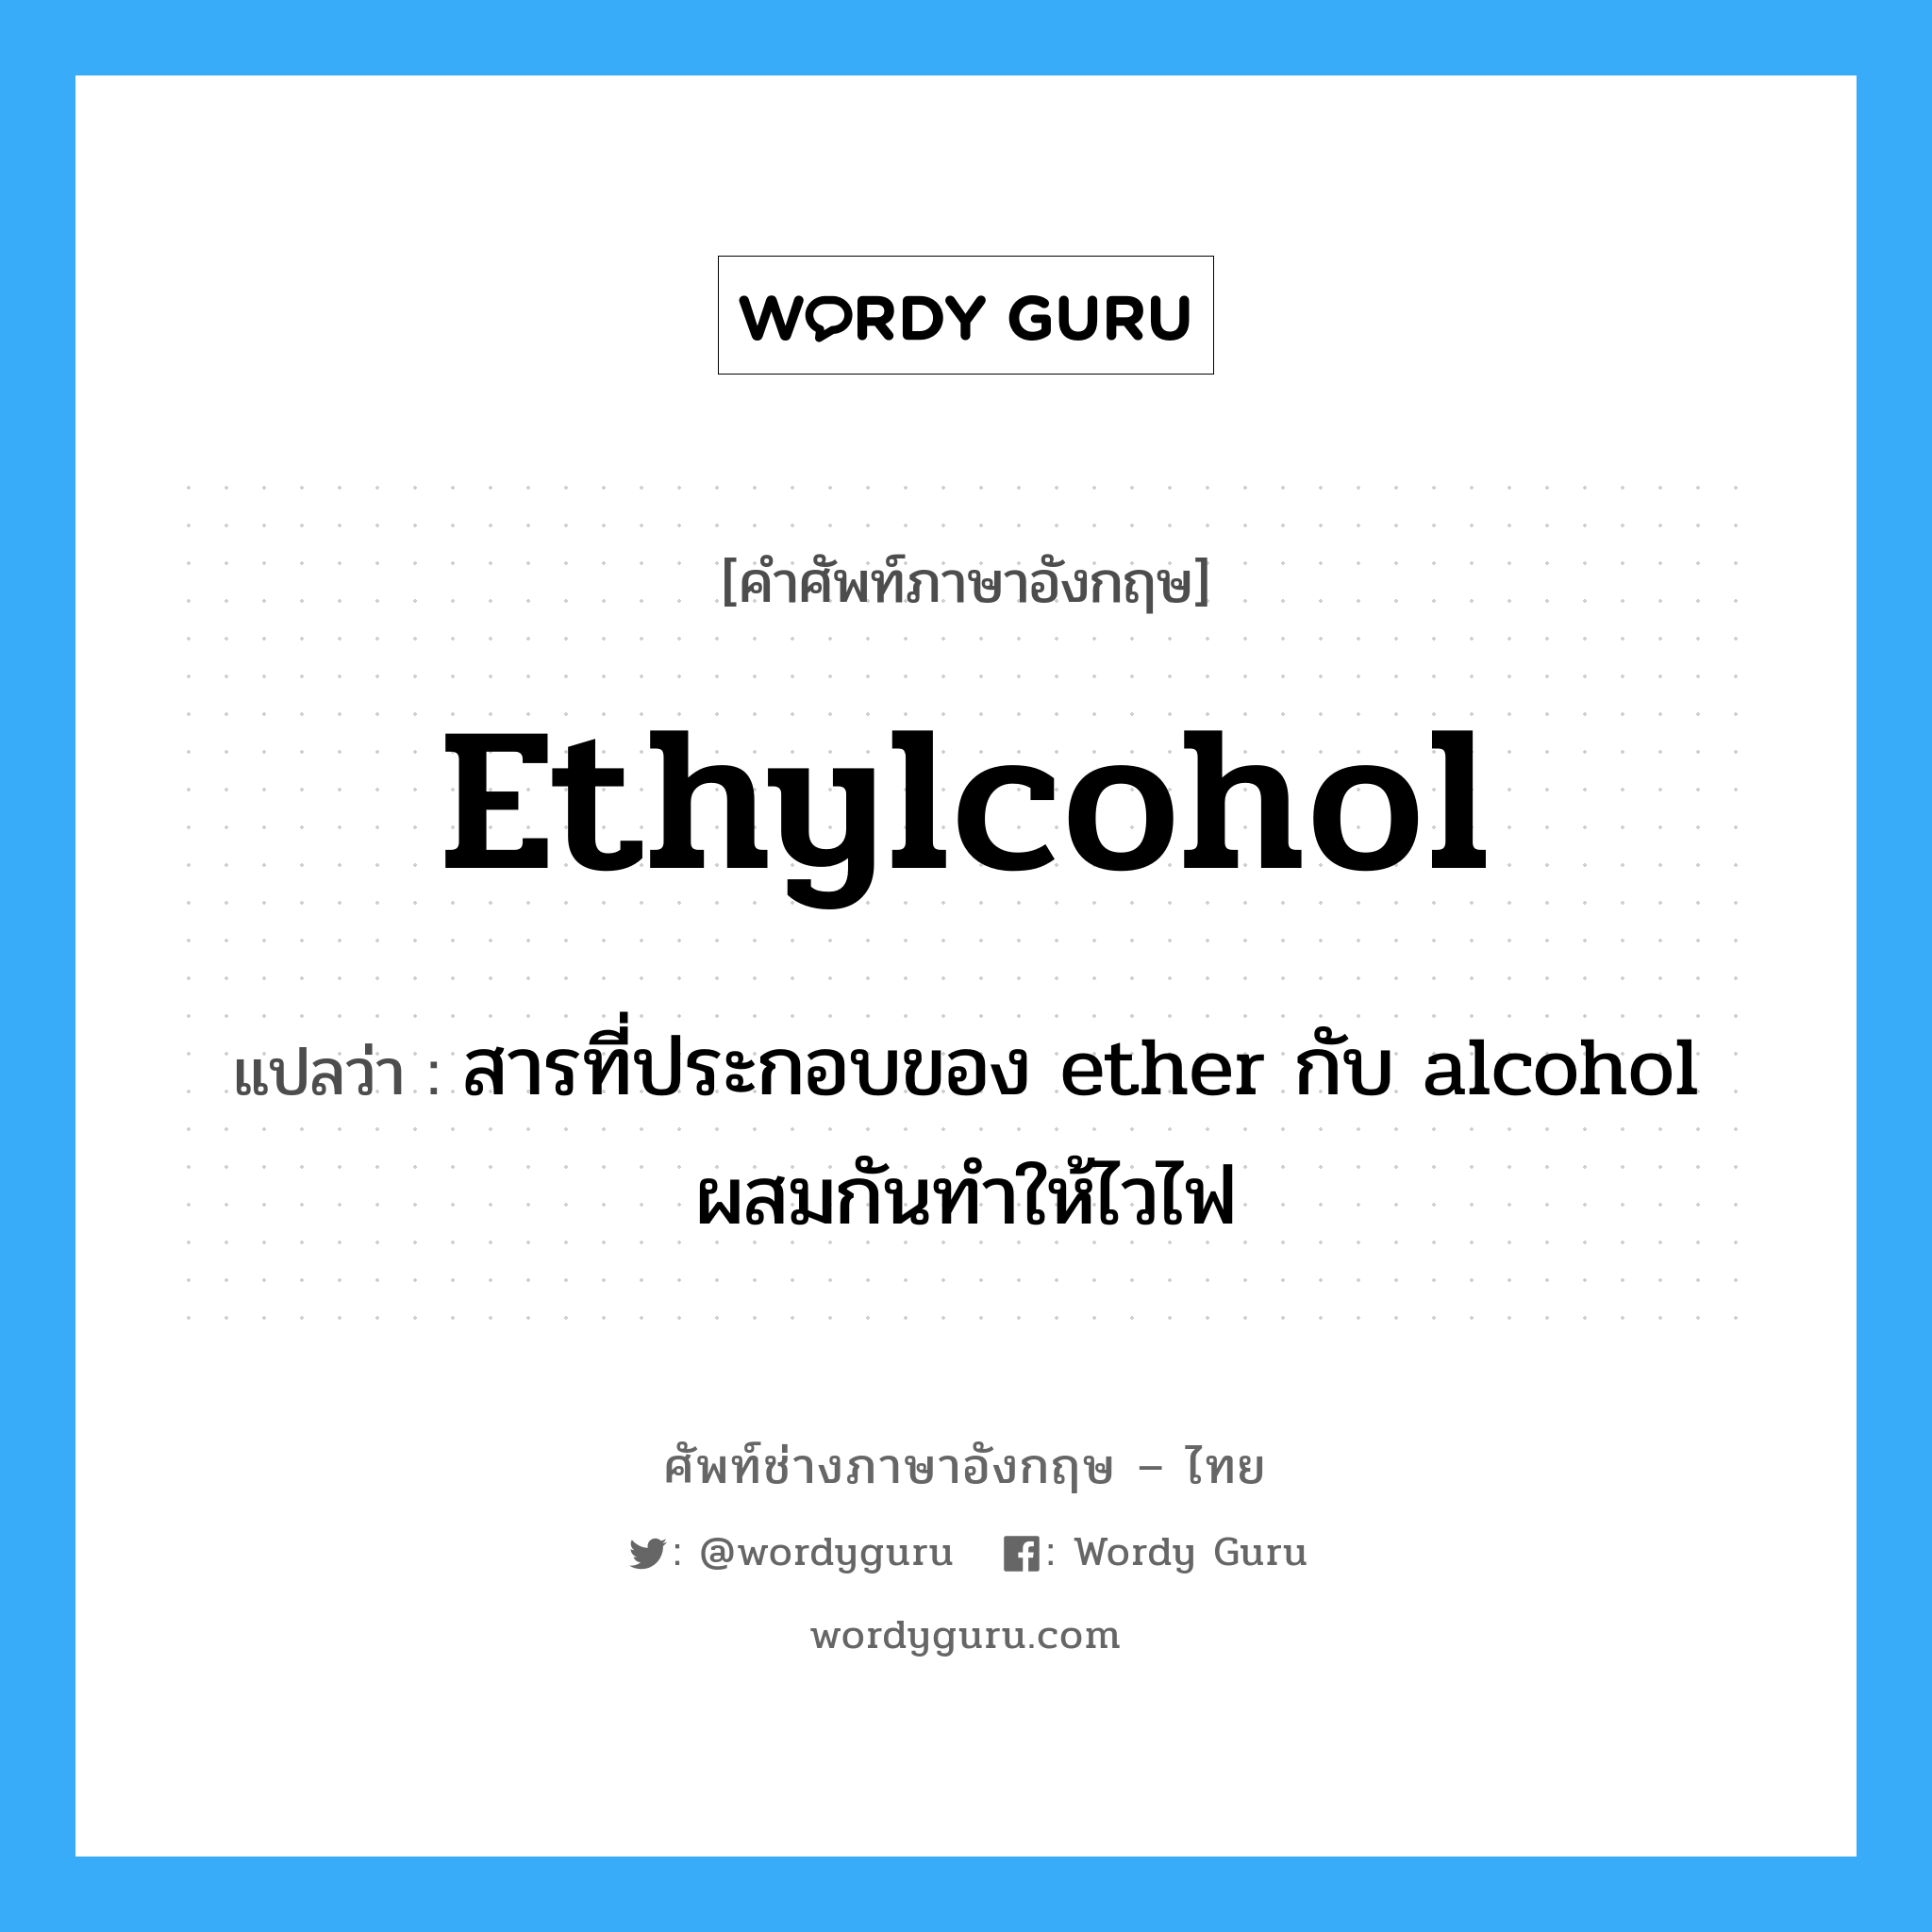 สารที่ประกอบของ ether กับ alcohol ผสมกันทำให้ไวไฟ ภาษาอังกฤษ?, คำศัพท์ช่างภาษาอังกฤษ - ไทย สารที่ประกอบของ ether กับ alcohol ผสมกันทำให้ไวไฟ คำศัพท์ภาษาอังกฤษ สารที่ประกอบของ ether กับ alcohol ผสมกันทำให้ไวไฟ แปลว่า ethylcohol